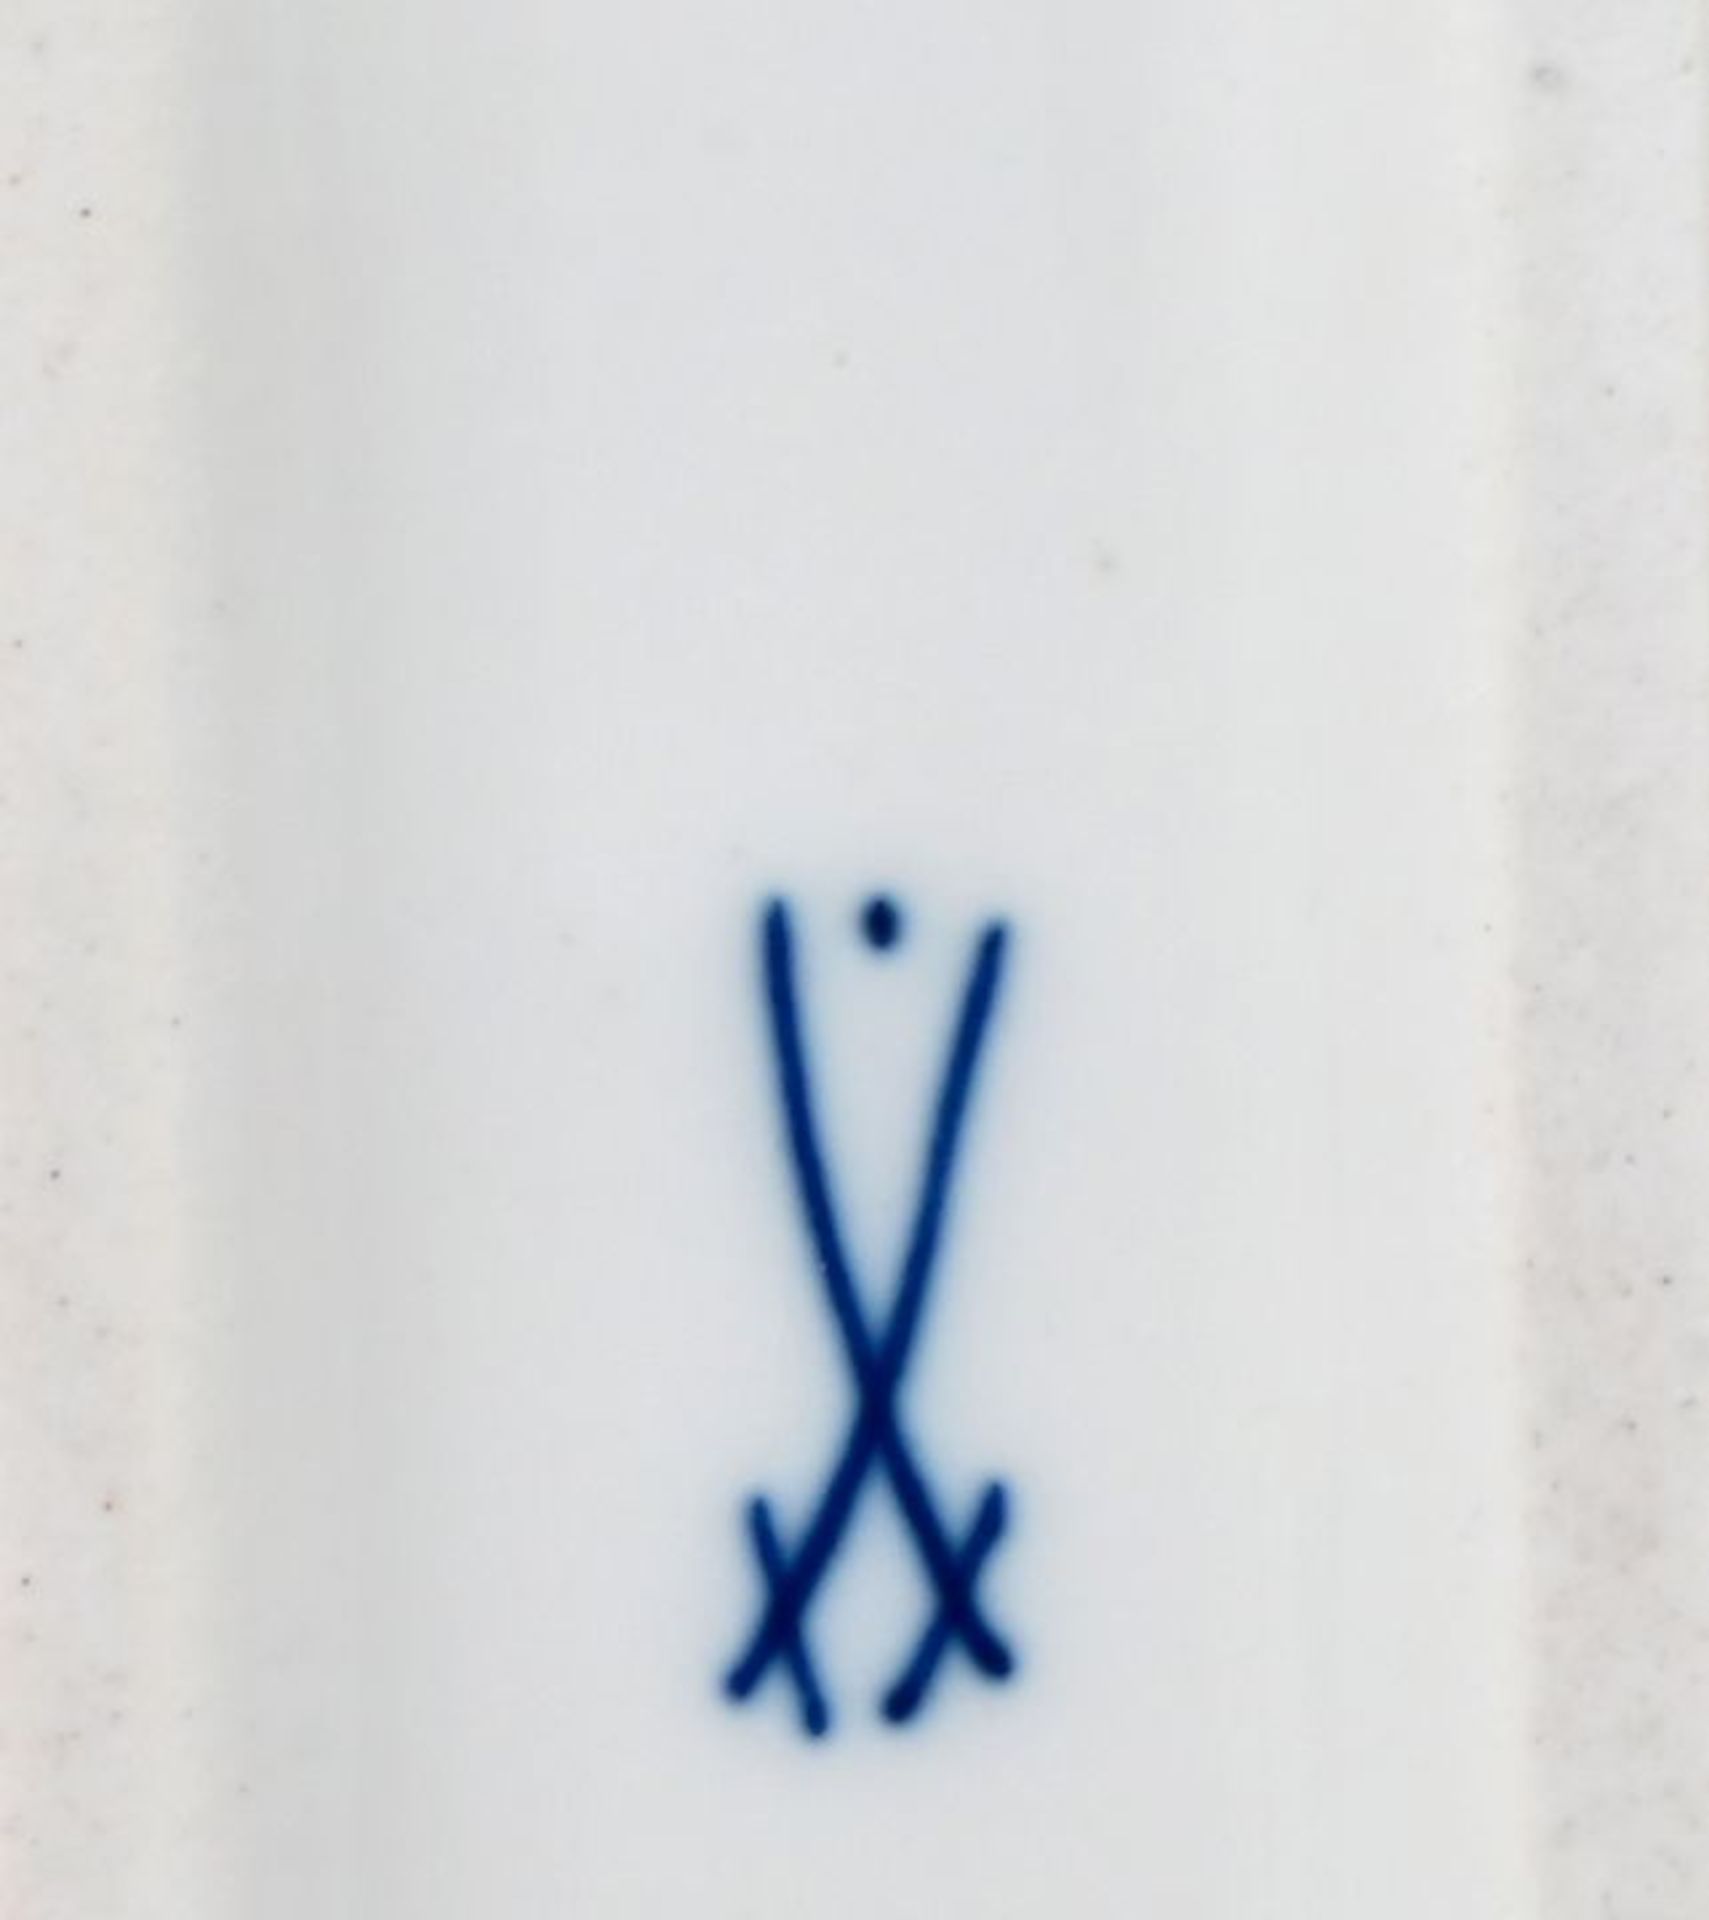 Schreibzeug, Meissen, um 1920/ writing utensils porcelain - Image 2 of 3